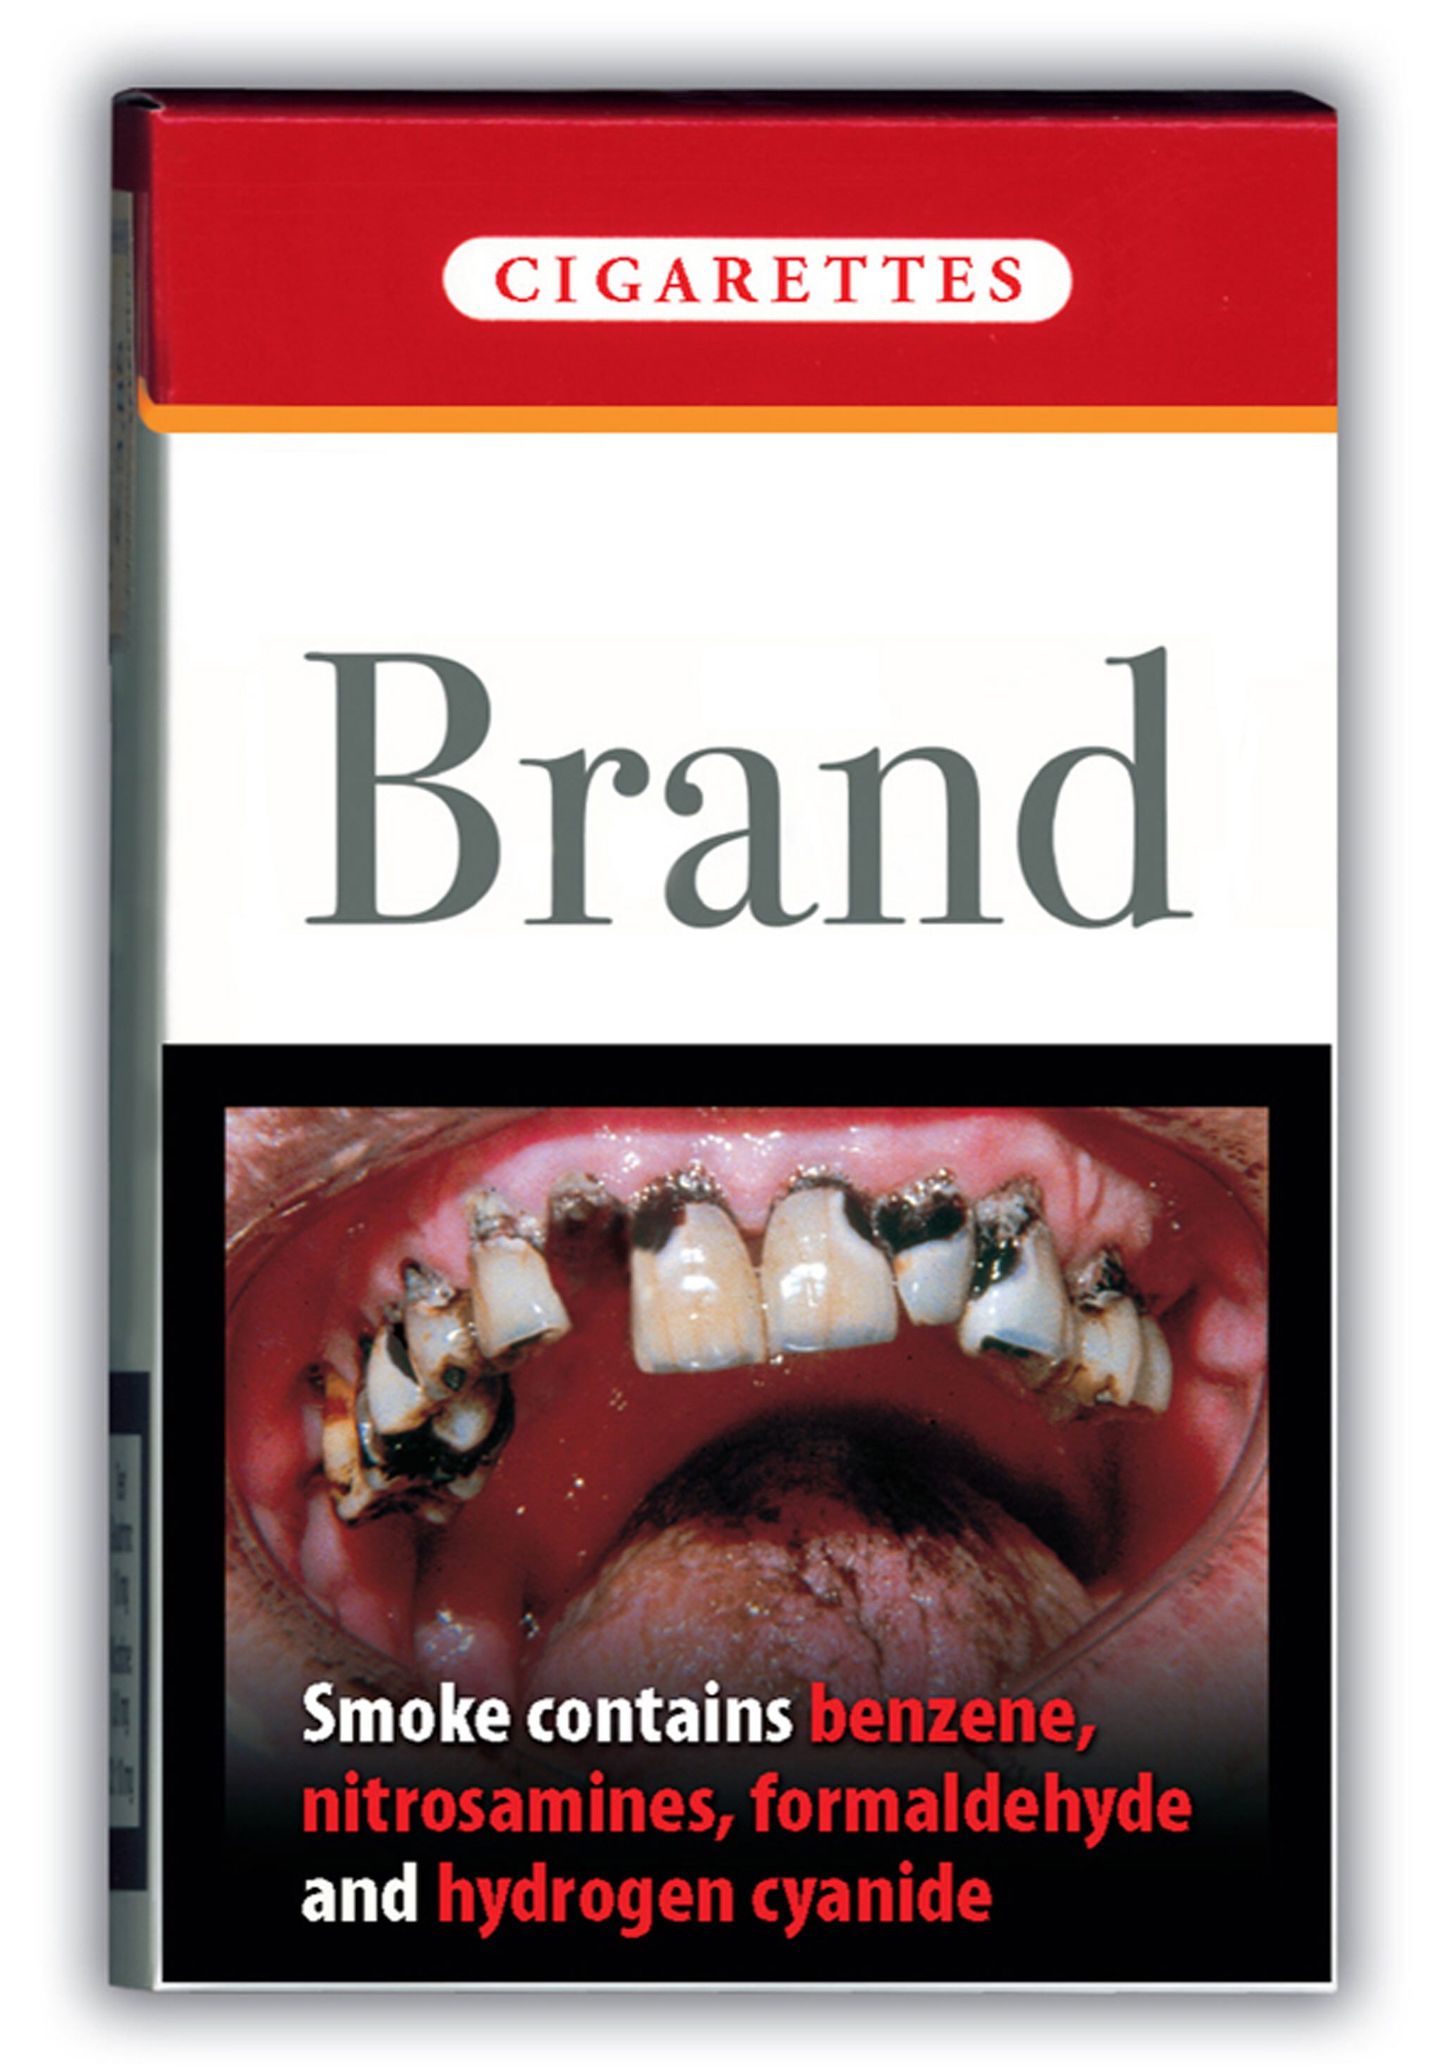 Картинка на пачке сигарет наглядно предупреждает об опасностях курения.